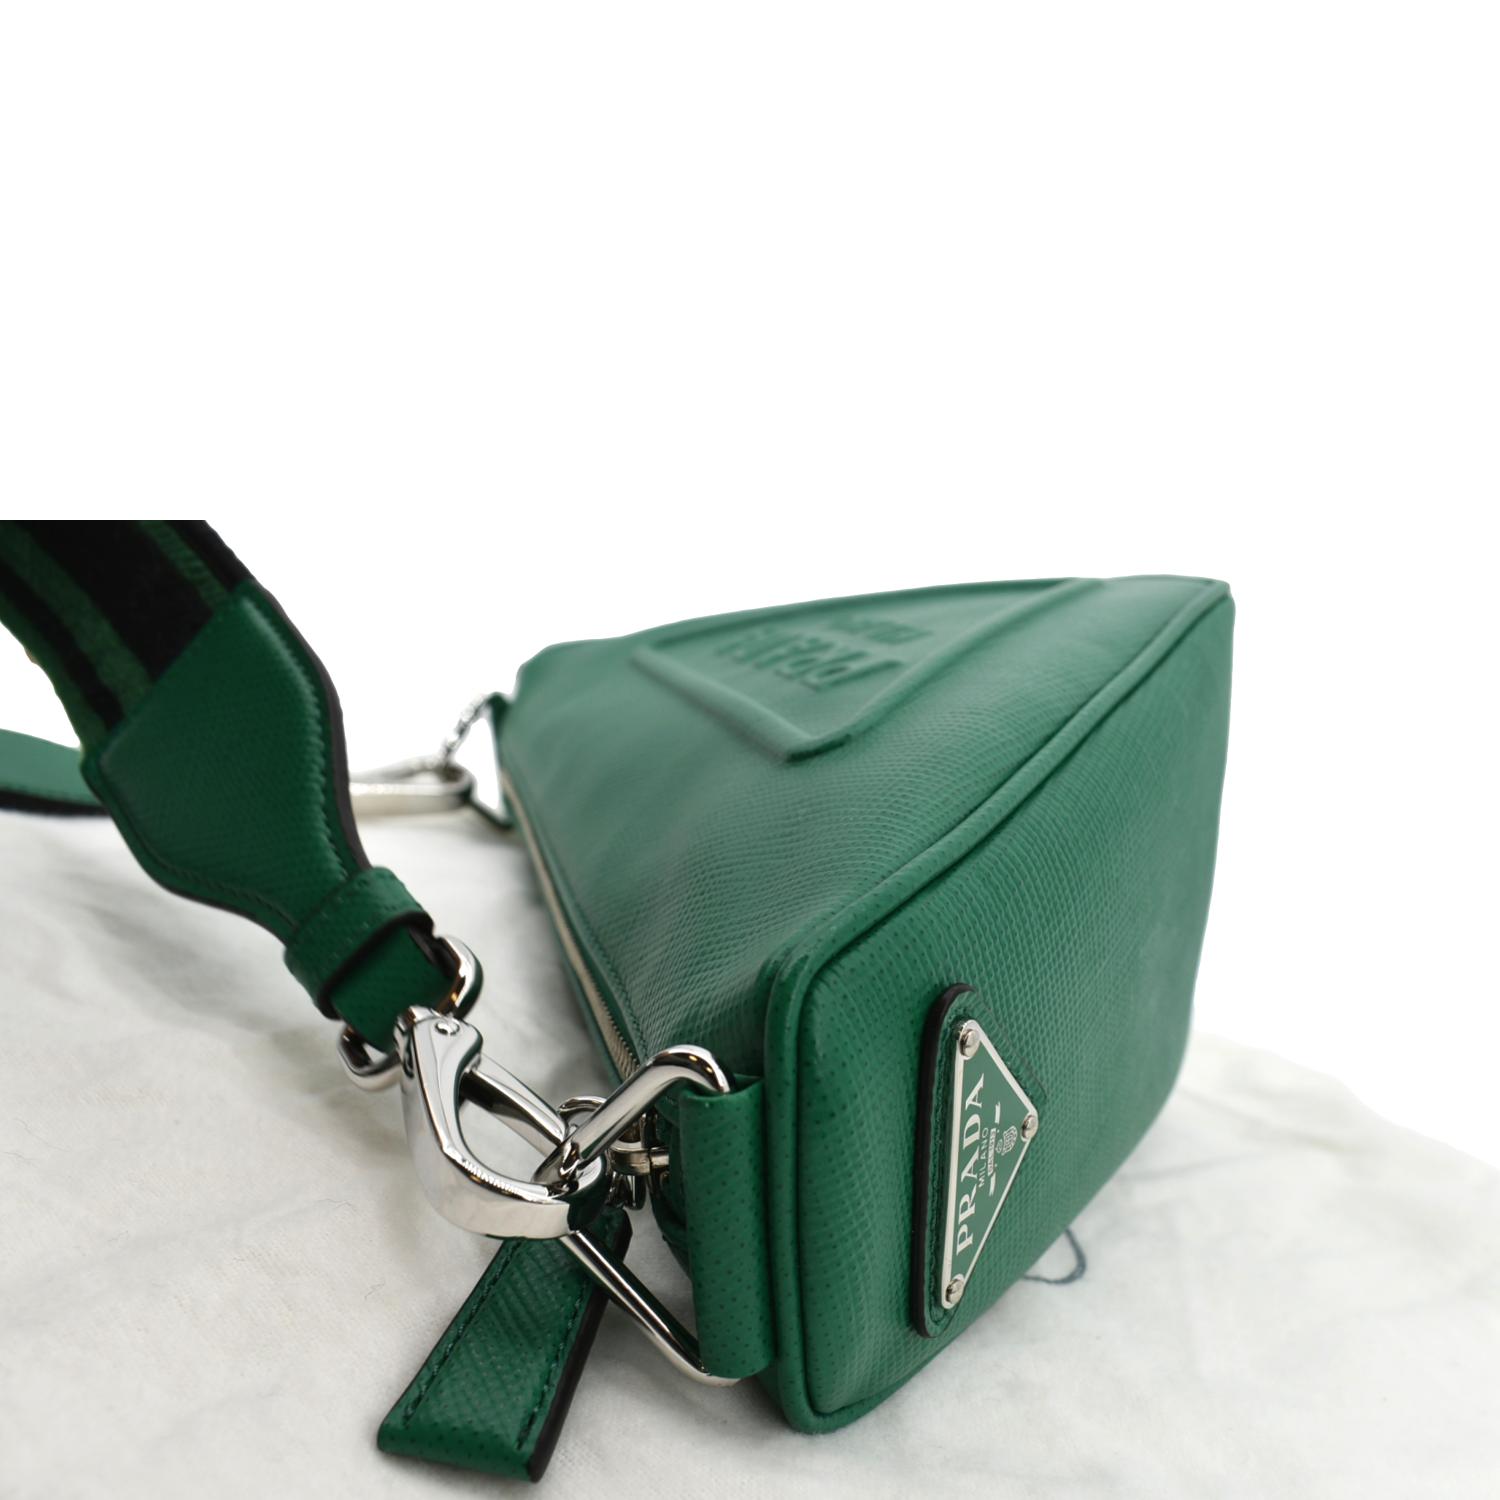 Prada Nylon Triangle Cosmetic Bag in Green